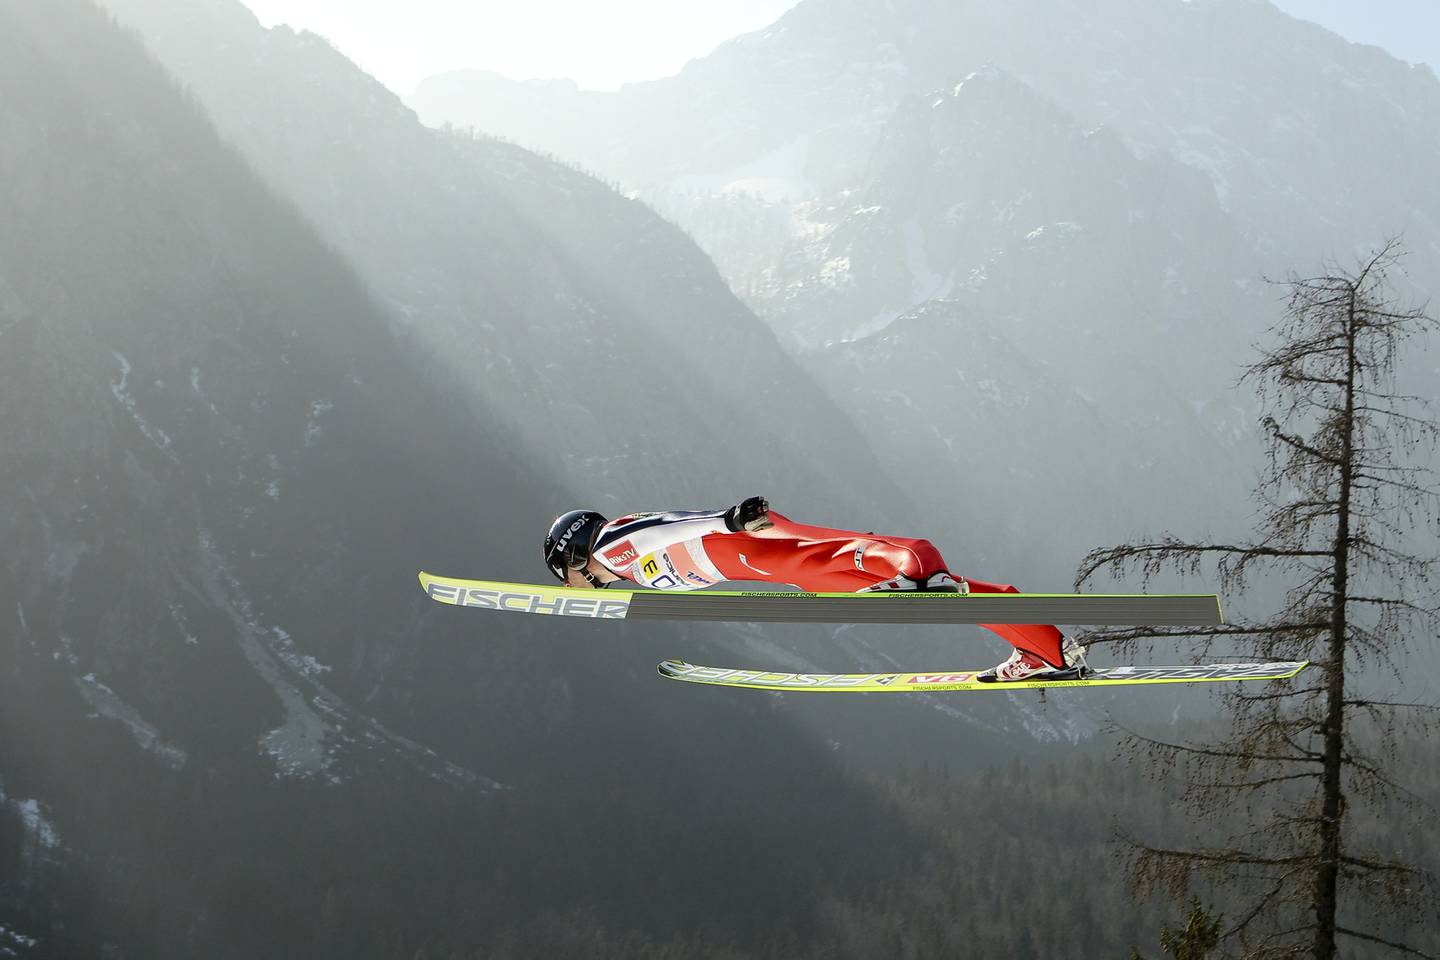 Bjørn Einar Romøren satte verdensrekord i skiflyging med 239 meter i Planica i Slovenia i 2005. Her fra en lagkonkurranse i samme bakke i 2012.